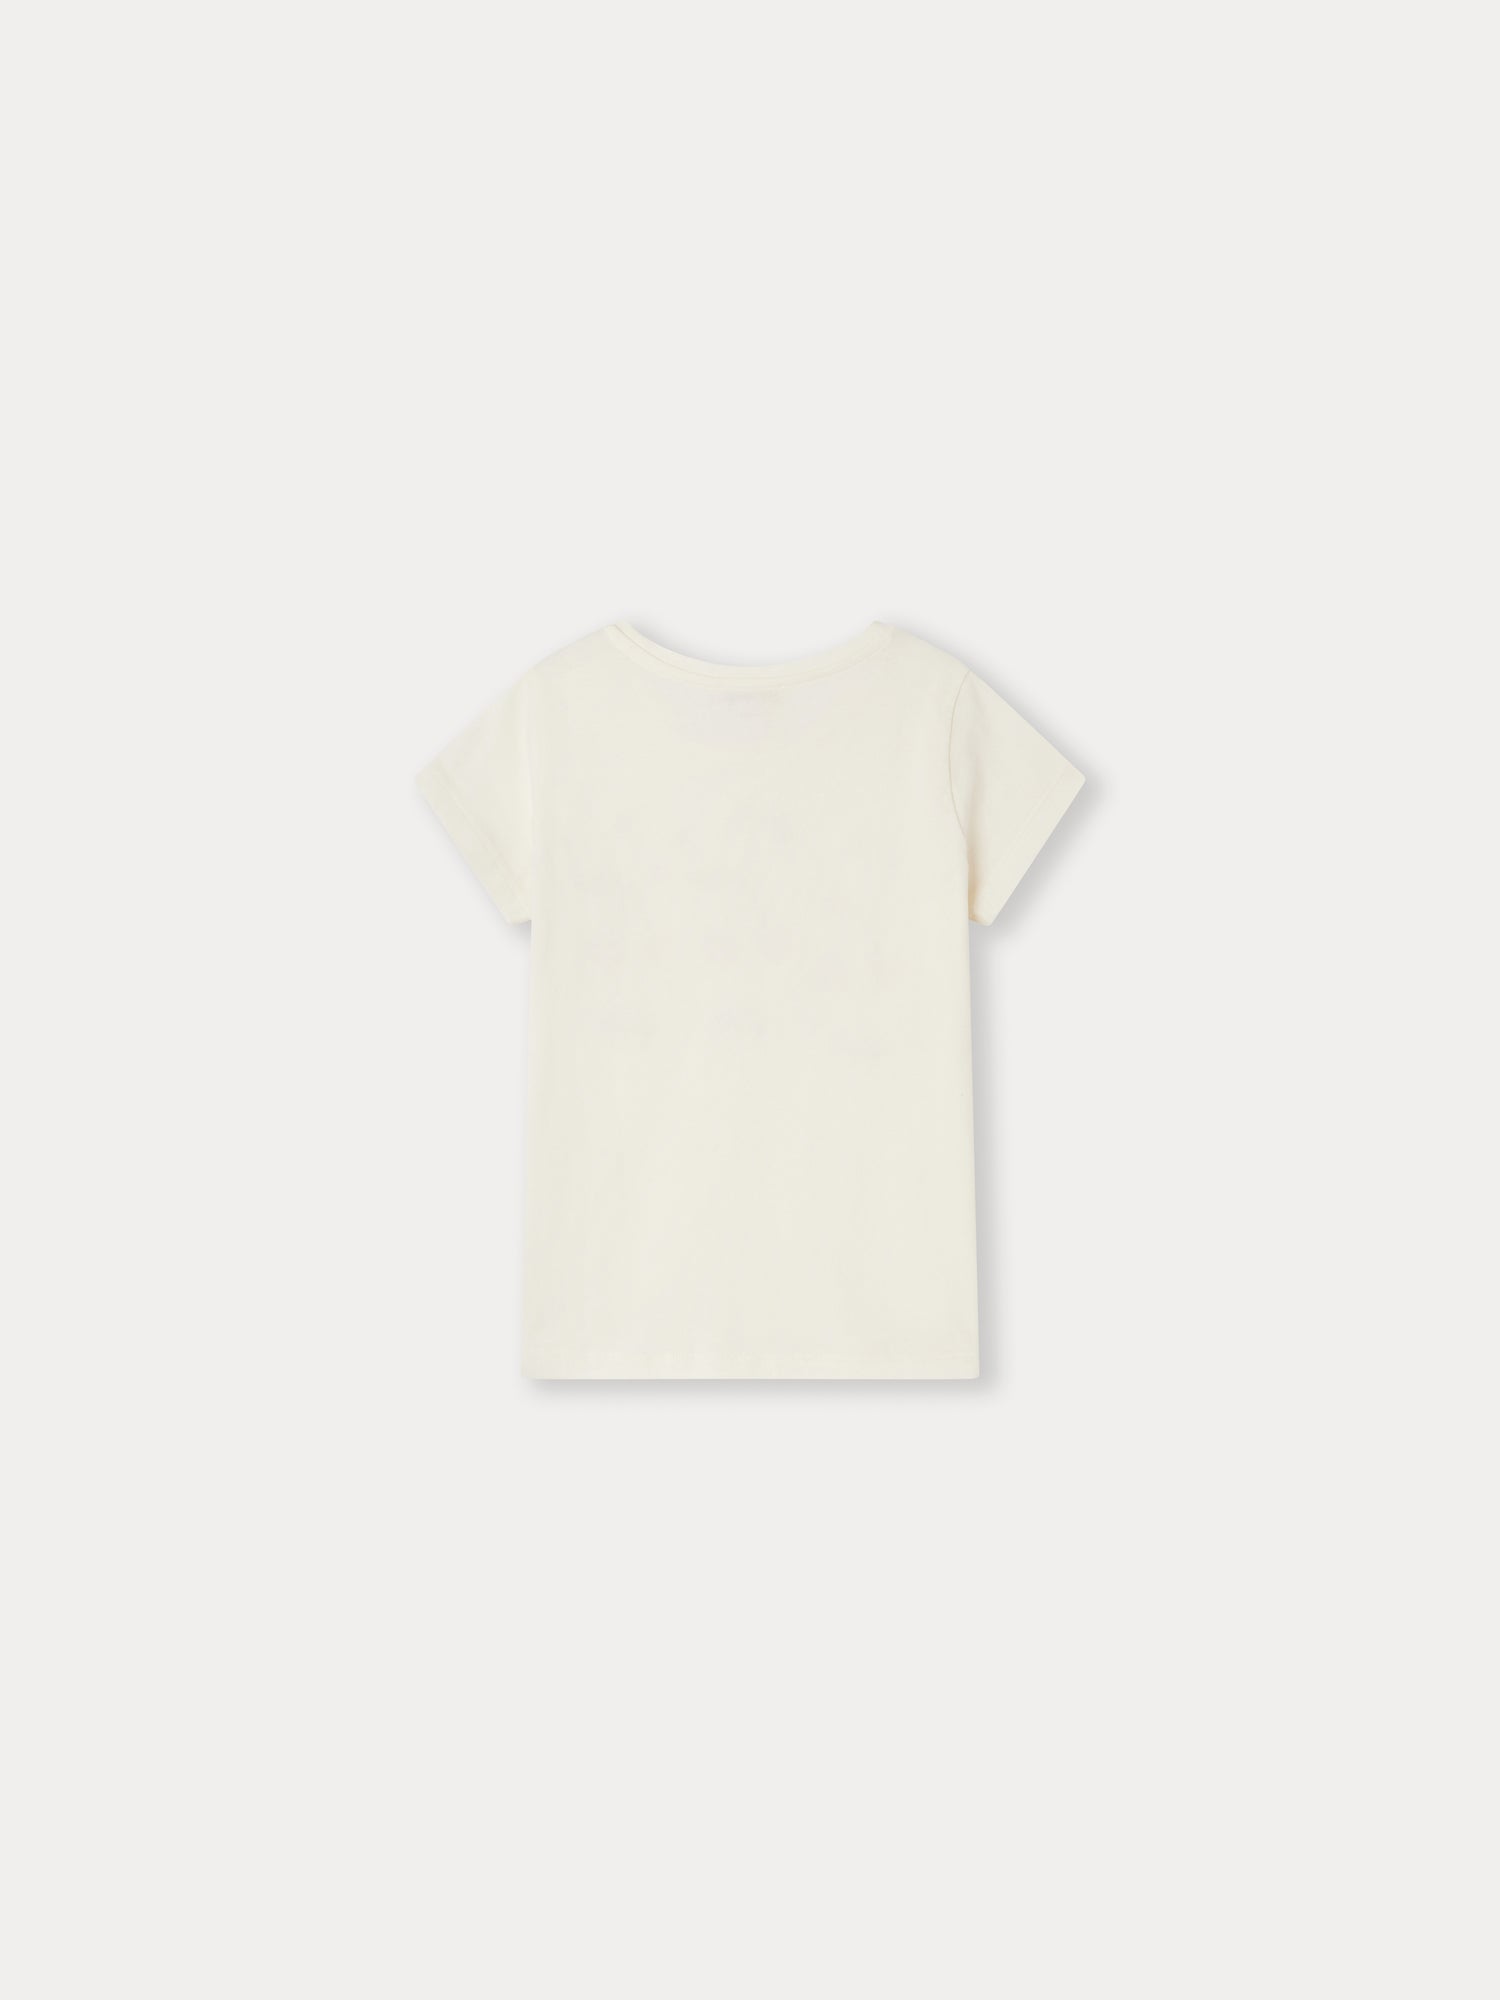 Capricia T-Shirt white milk • Bonpoint